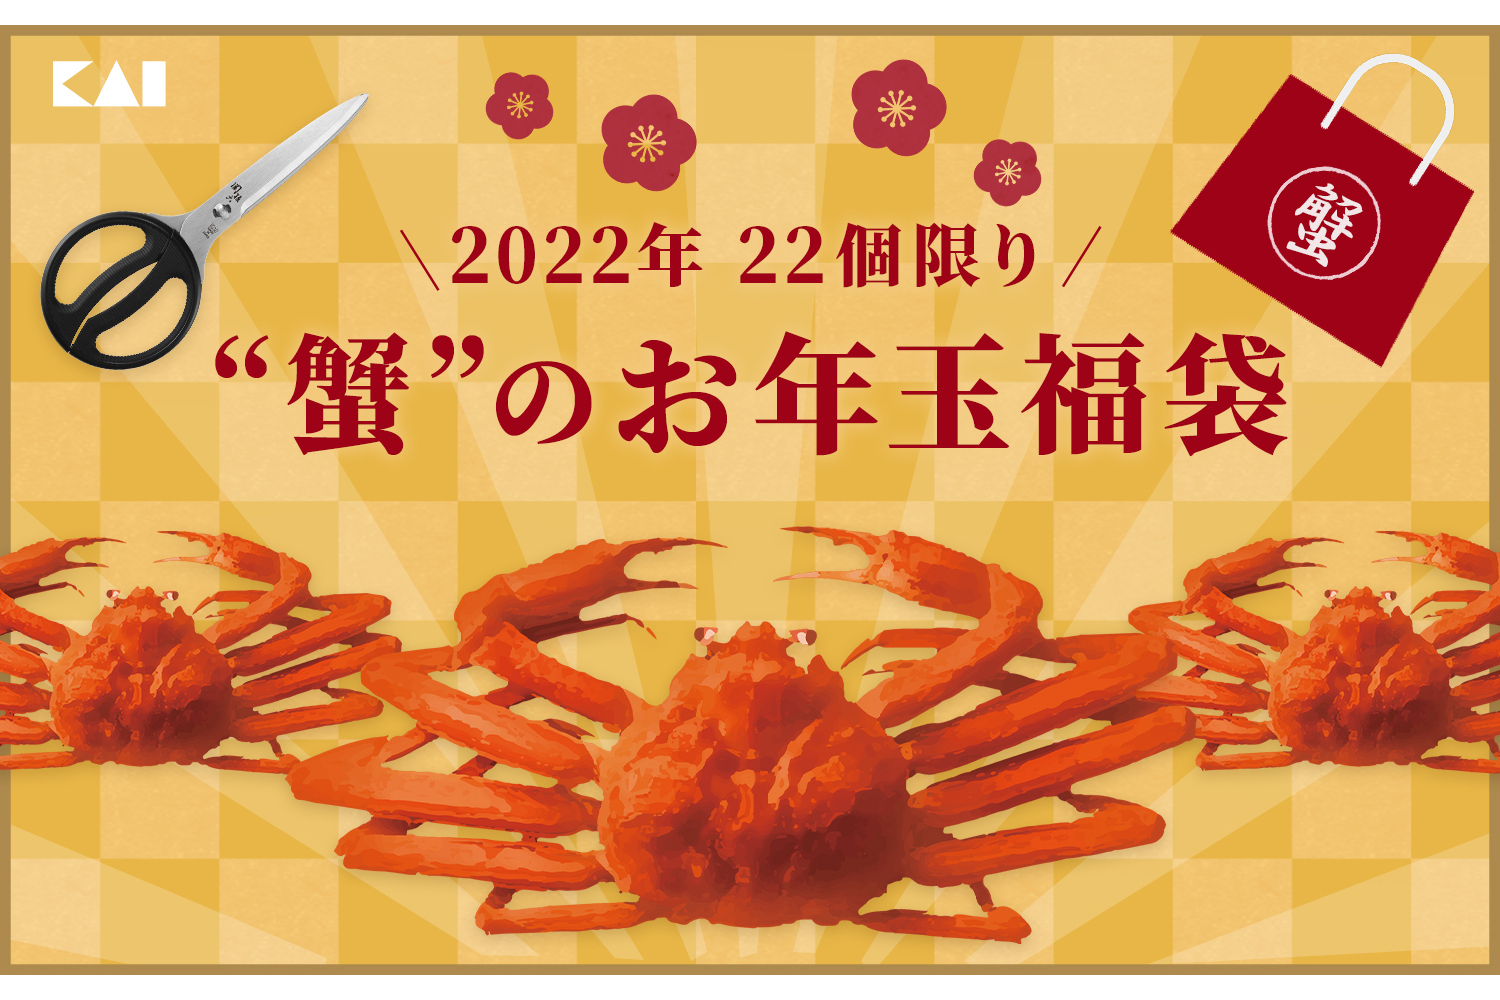 貝印 本ずわいがにとカニハサミがセットになった 蟹印22円福袋 グルメ Watch